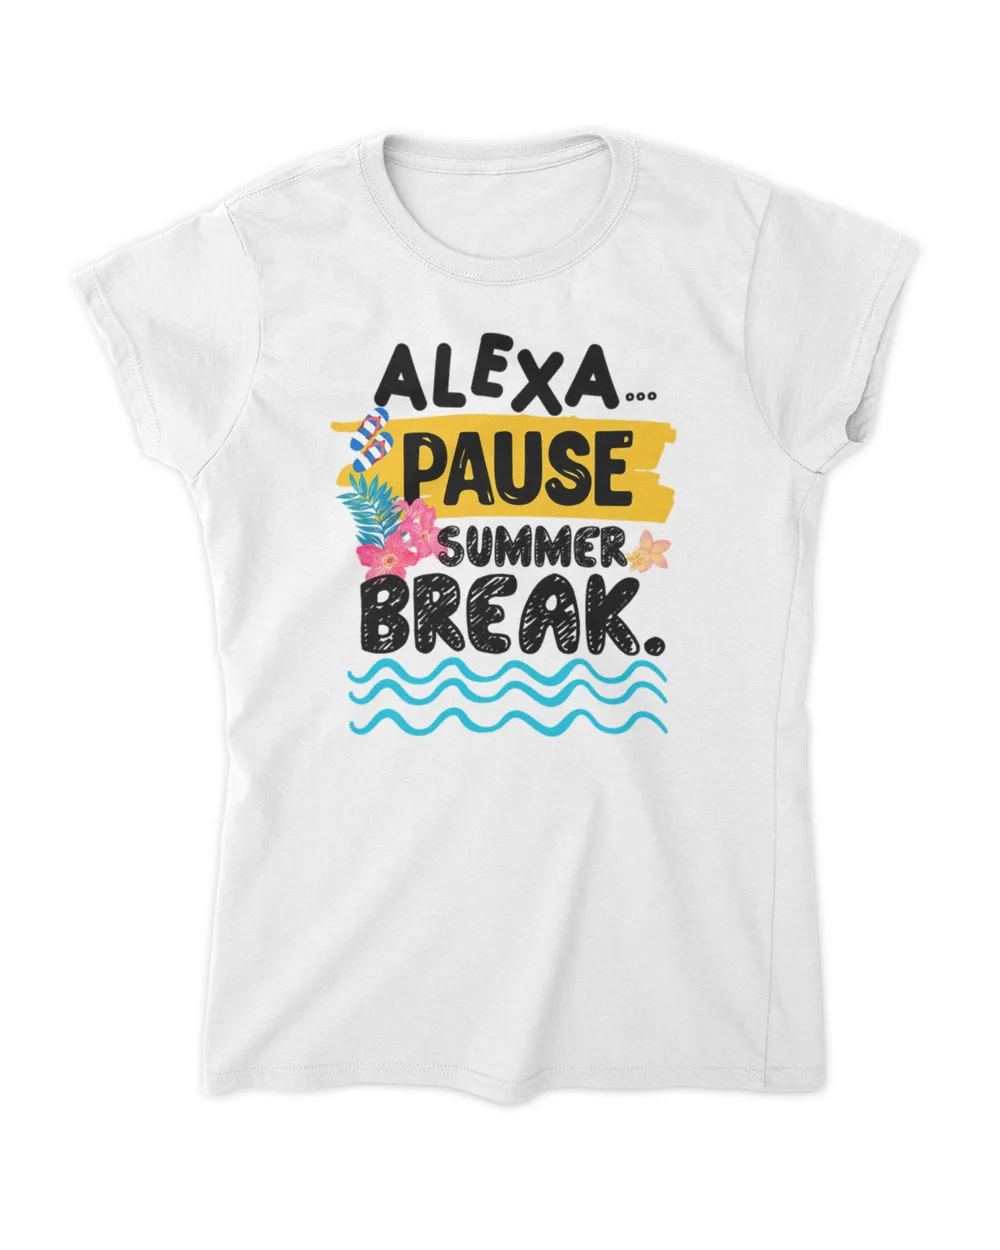 Teacher Alexa - Teacher Alexa Pause Summer Break -  Dreadtwank_